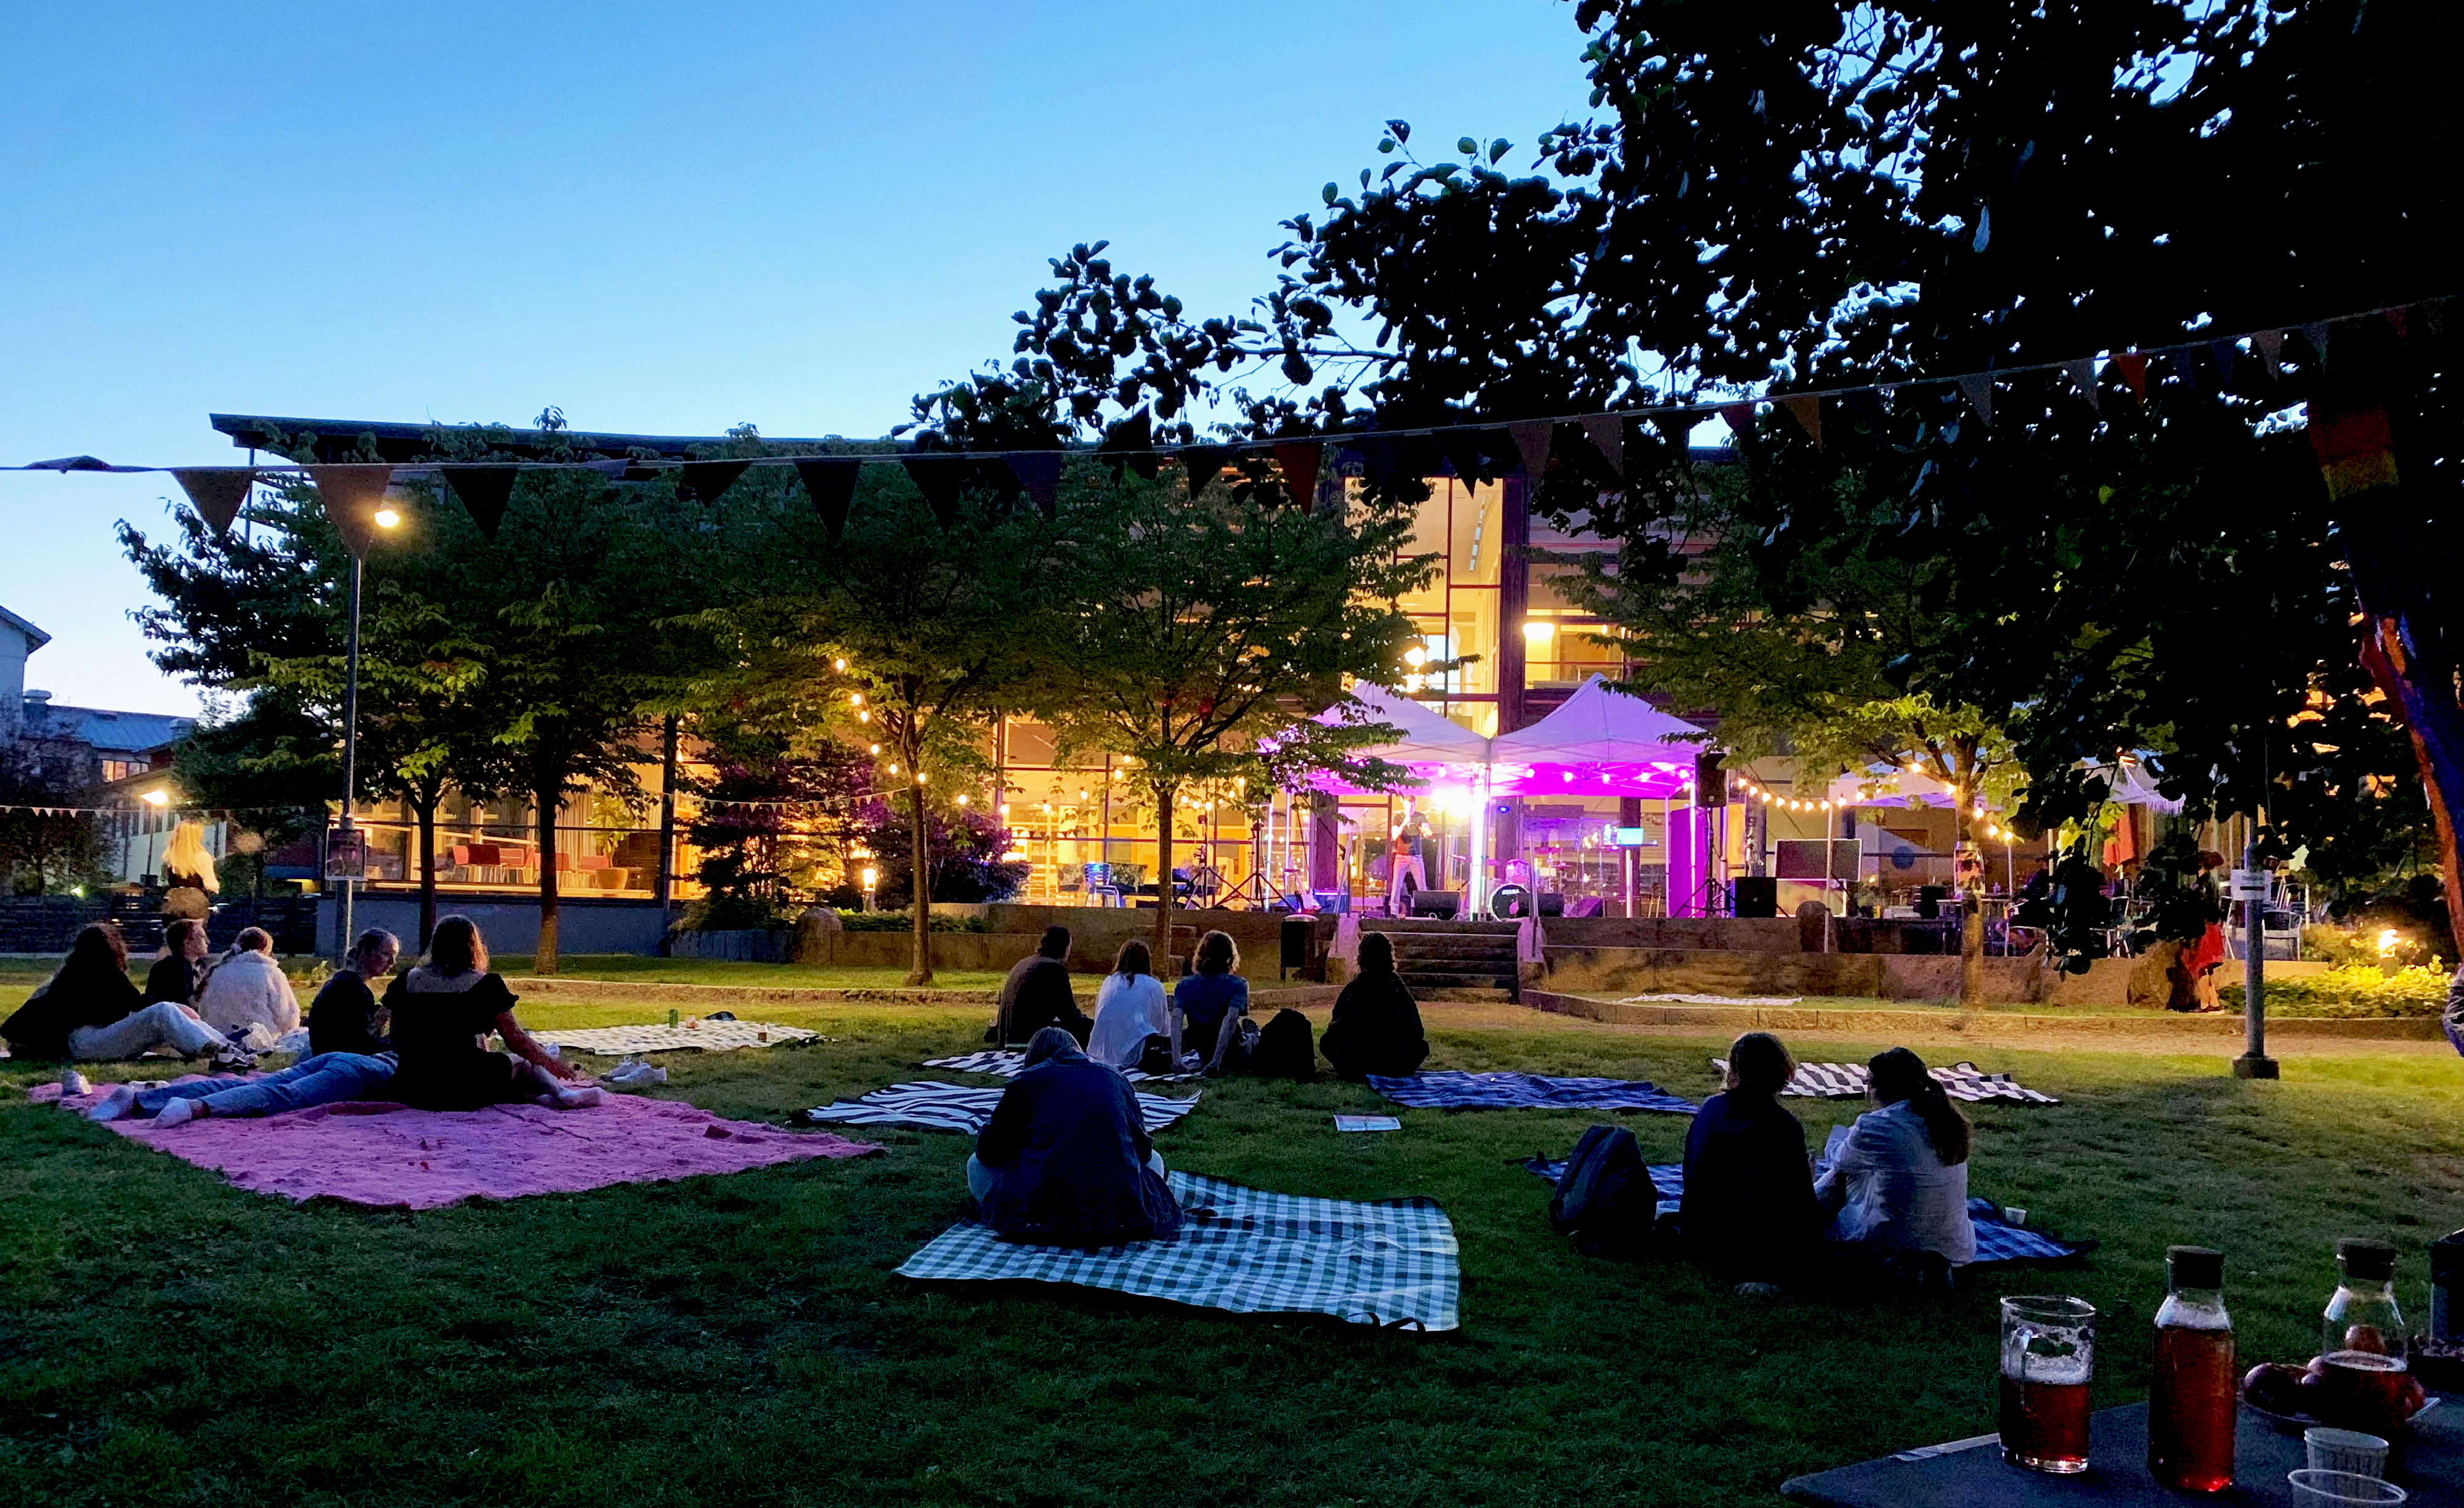 Sen kväll bakom kulturhuset i Mölnlycke med en färgsatt scen och publik på picknickfiltar bland träden.